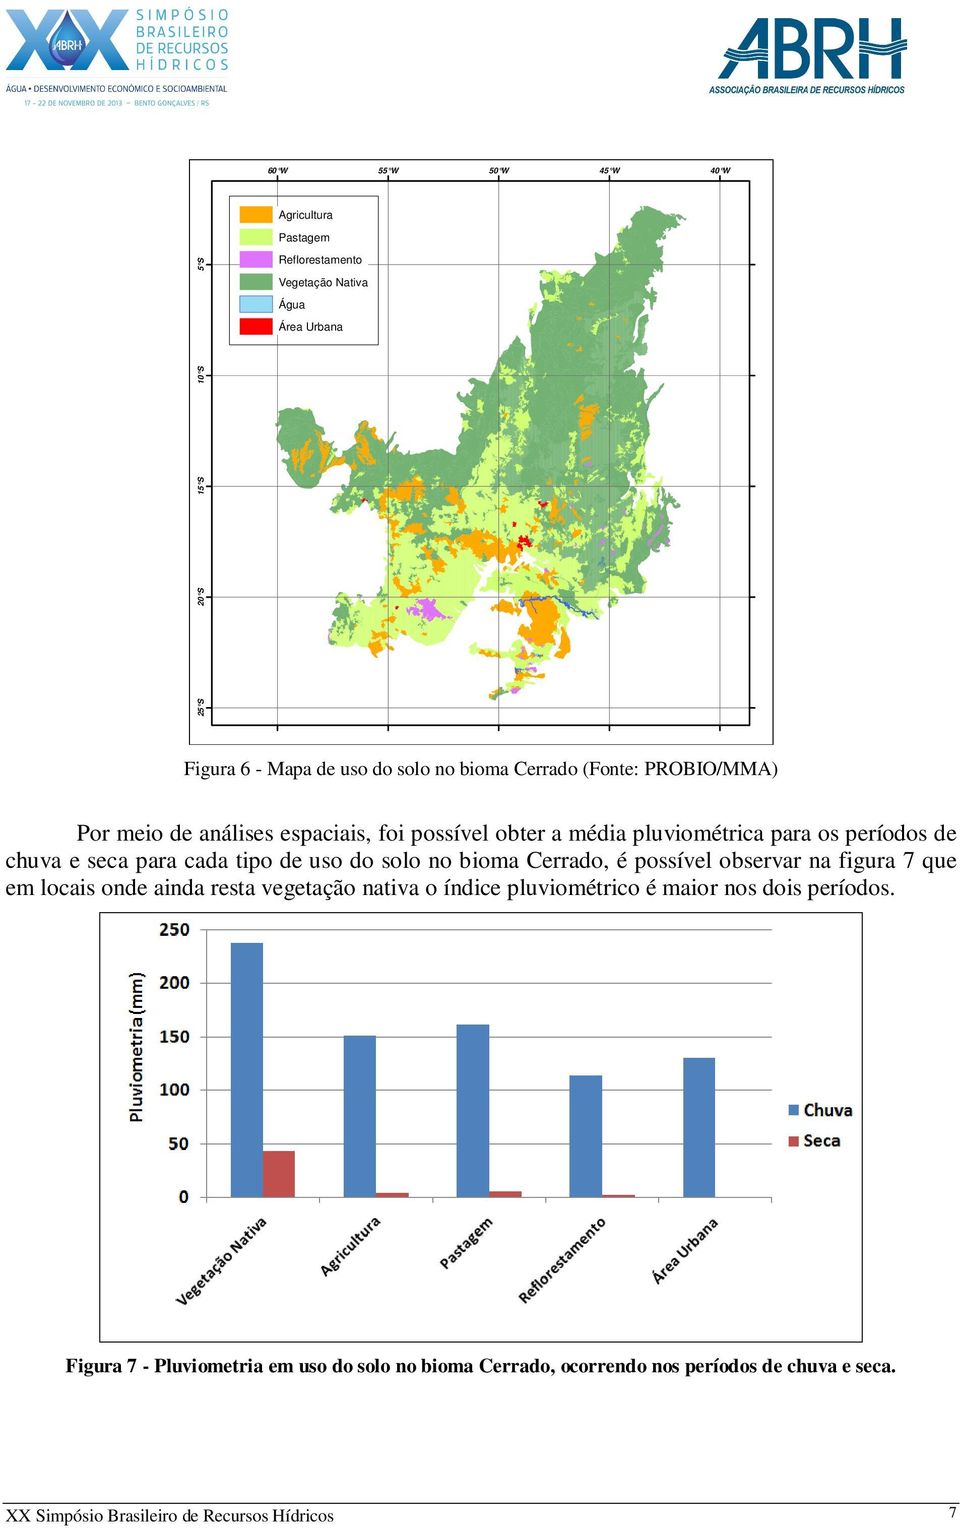 tipo de uso do solo no bioma Cerrado, é possível observar na figura 7 que em locais onde ainda resta vegetação nativa o índice pluviométrico é maior nos